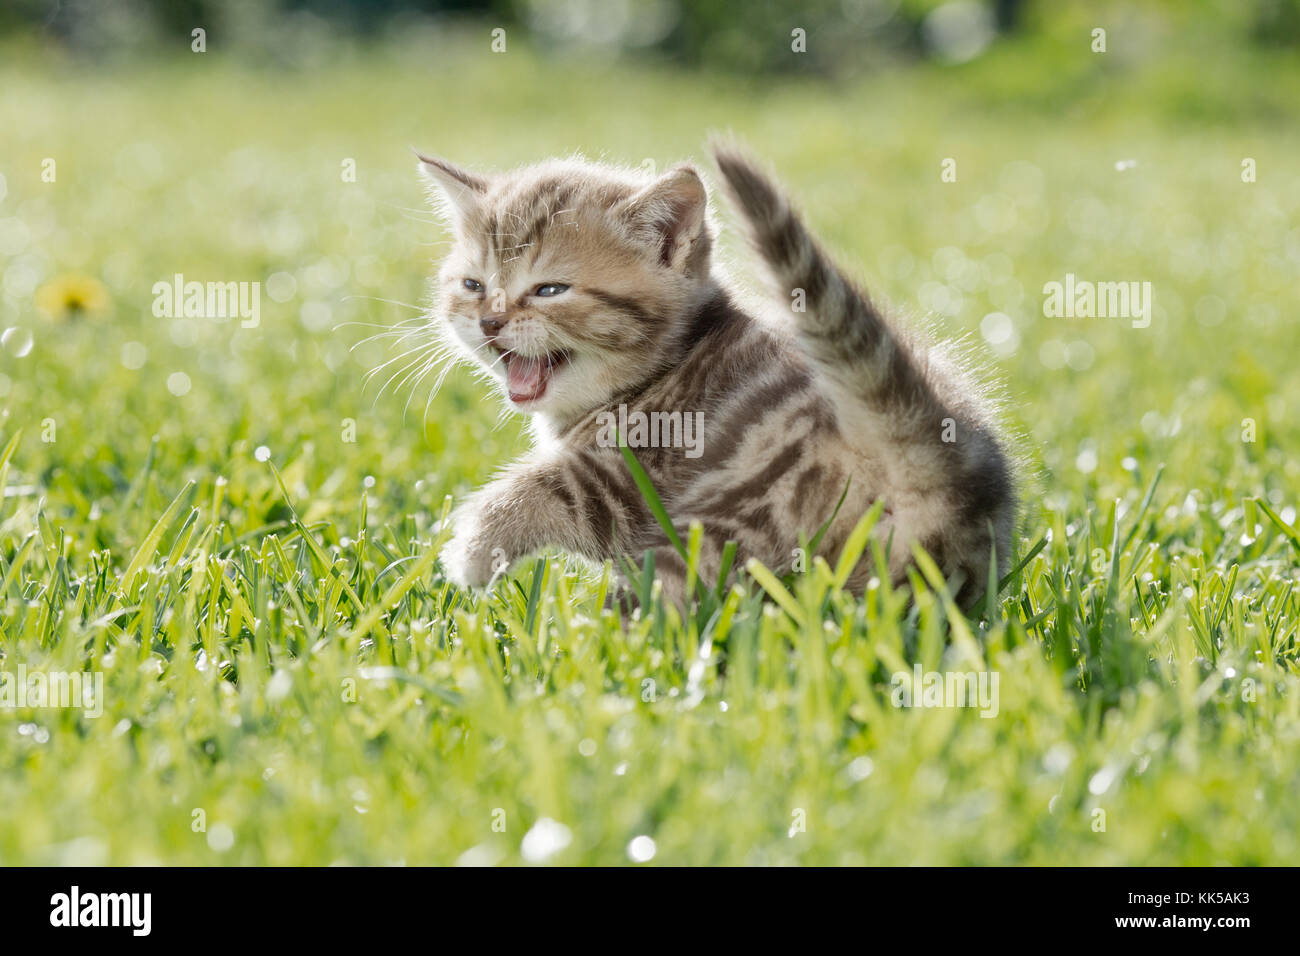 Junge Katze oder Kätzchen miauen im grünen Gras Stockfoto